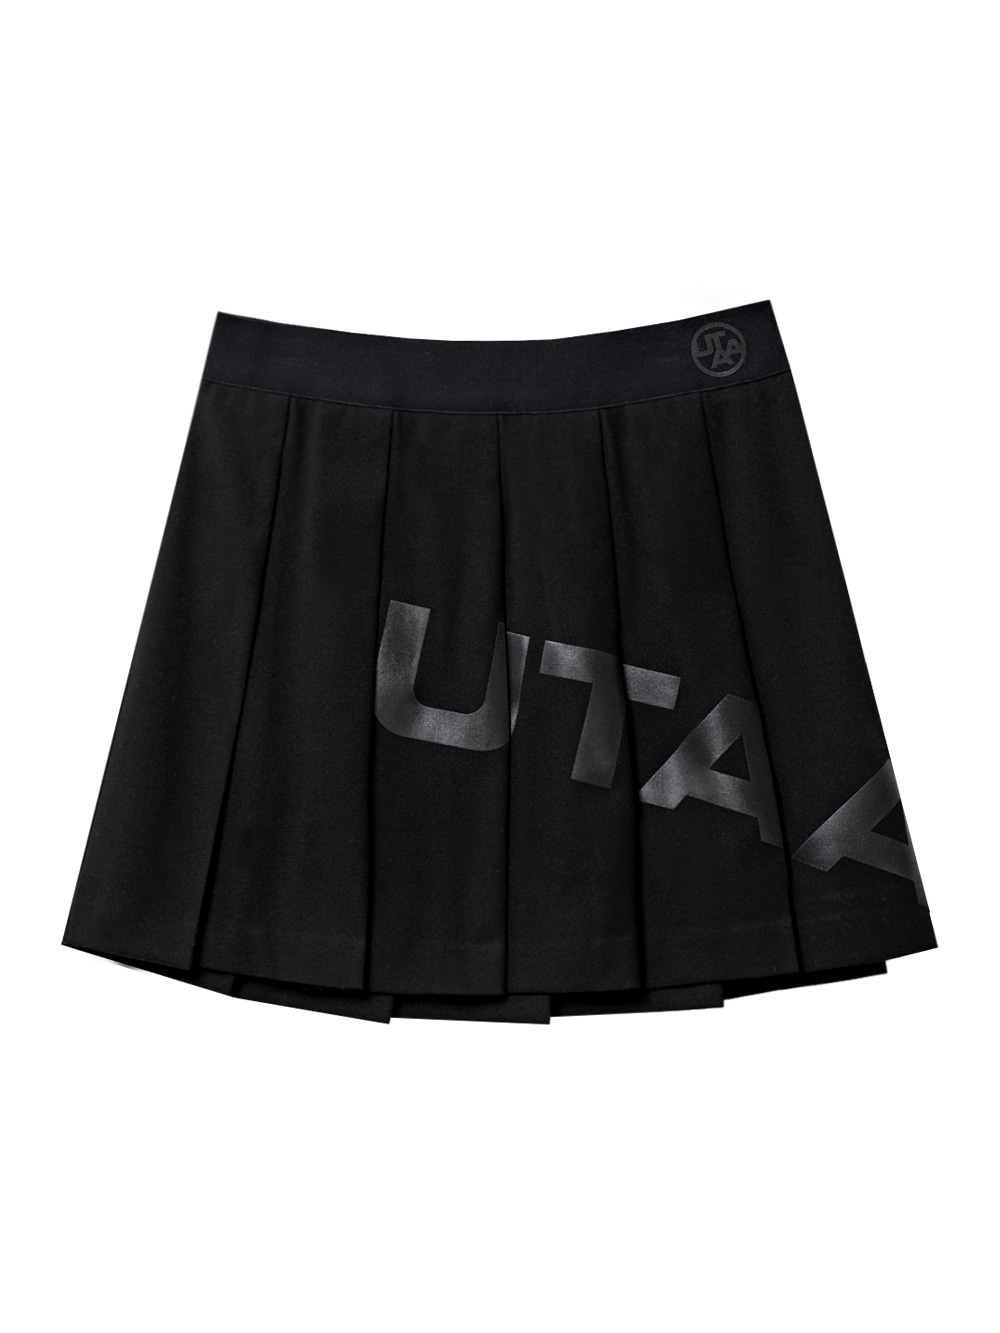 UTAA Bounce Logo Basic Skirt : Black(UC1SKF763BK)